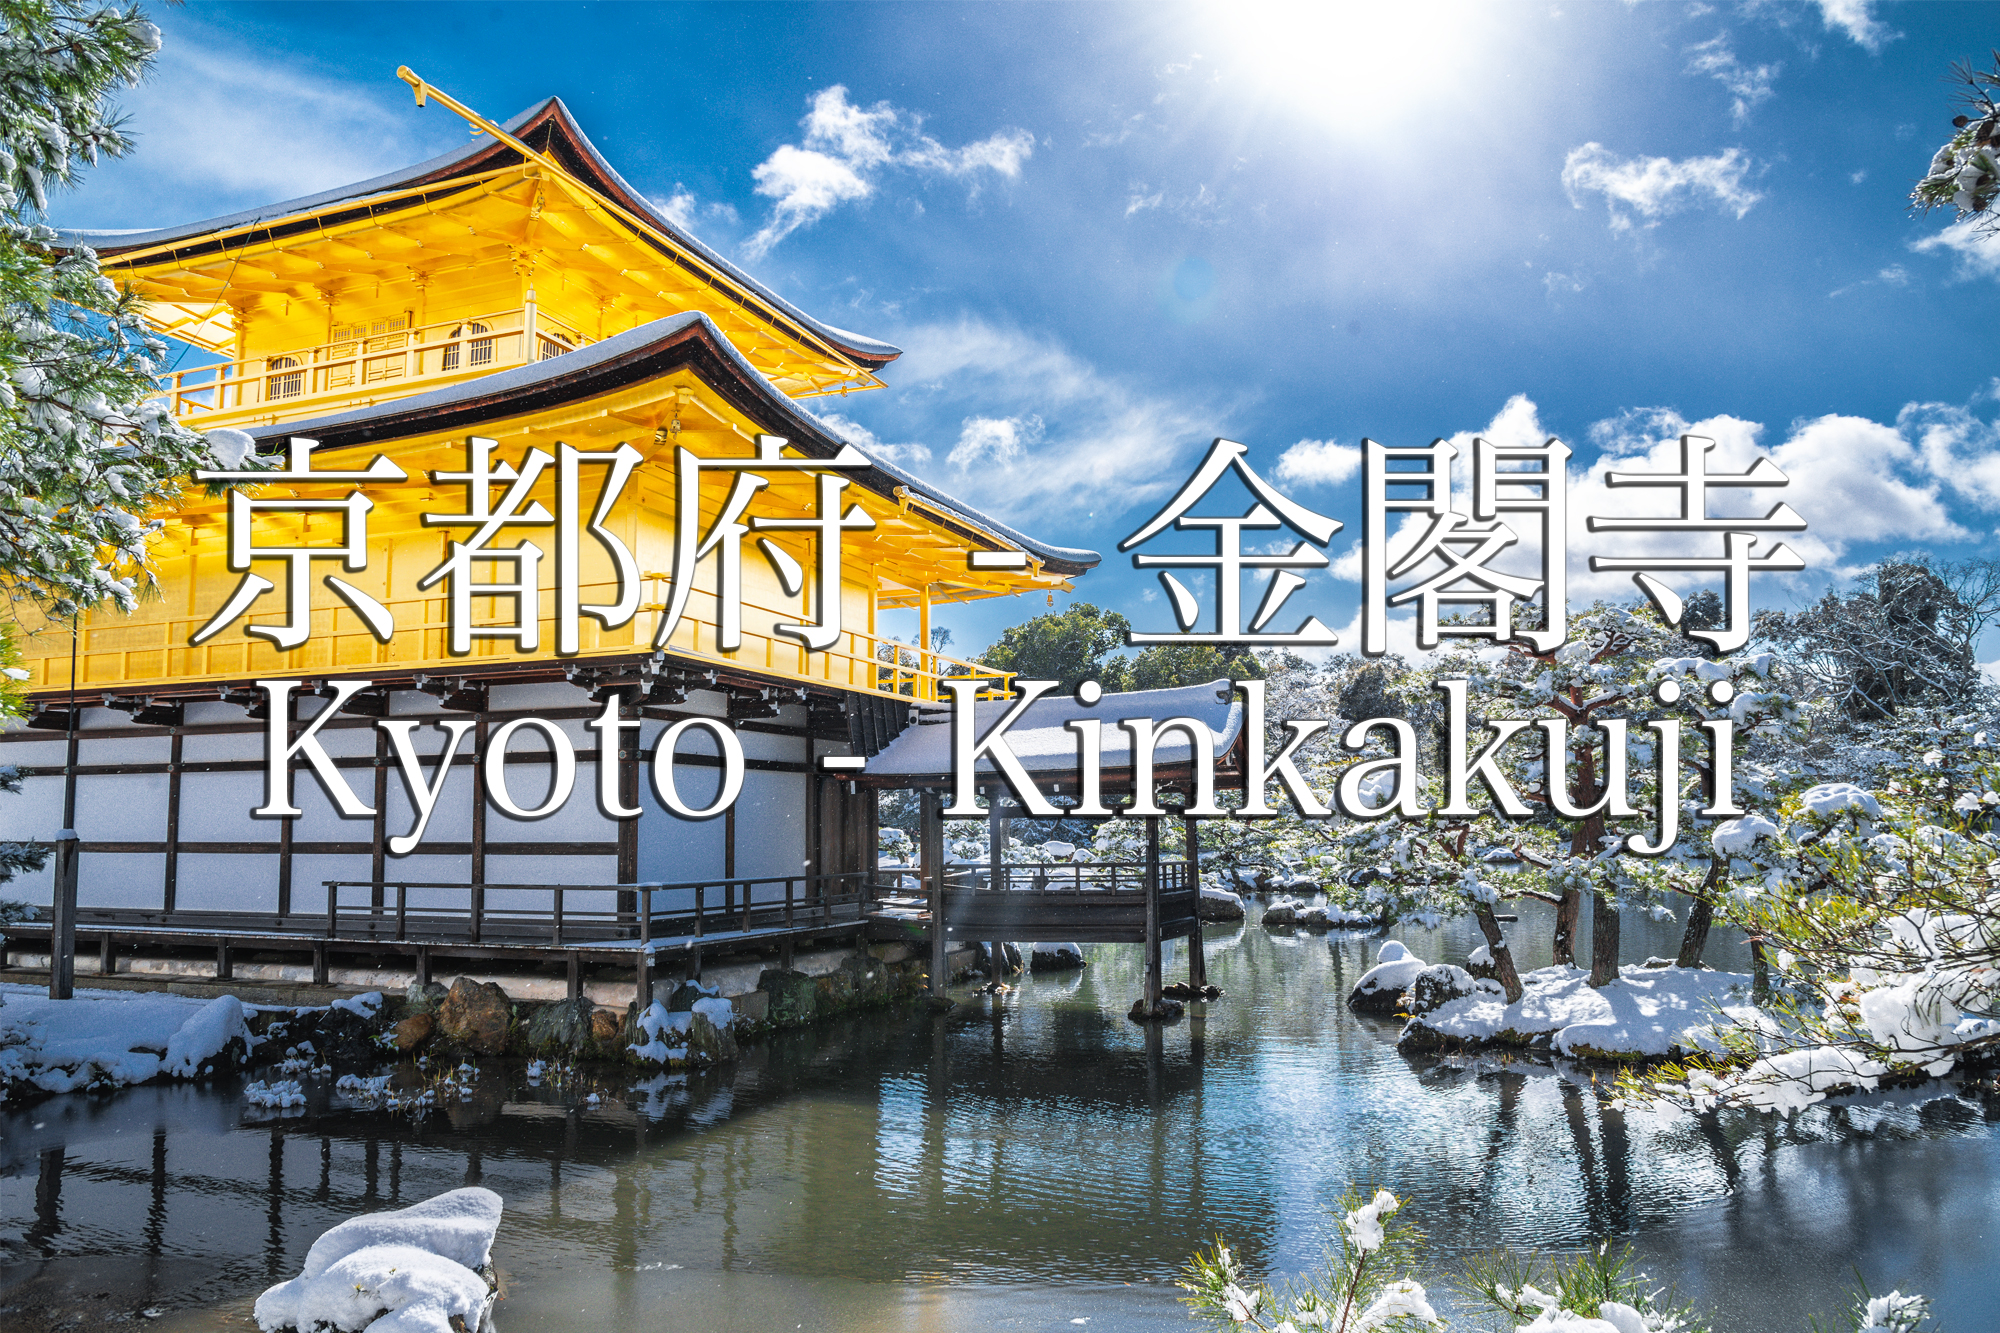 京都 金閣寺 京都の冬 雪景色の庭園が美しいおすすめの写真撮影スポット 撮影した写真の紹介 アクセス情報や交通手段など 写真 や映像で紹介する関西 近畿の絶景カメラ 観光スポット